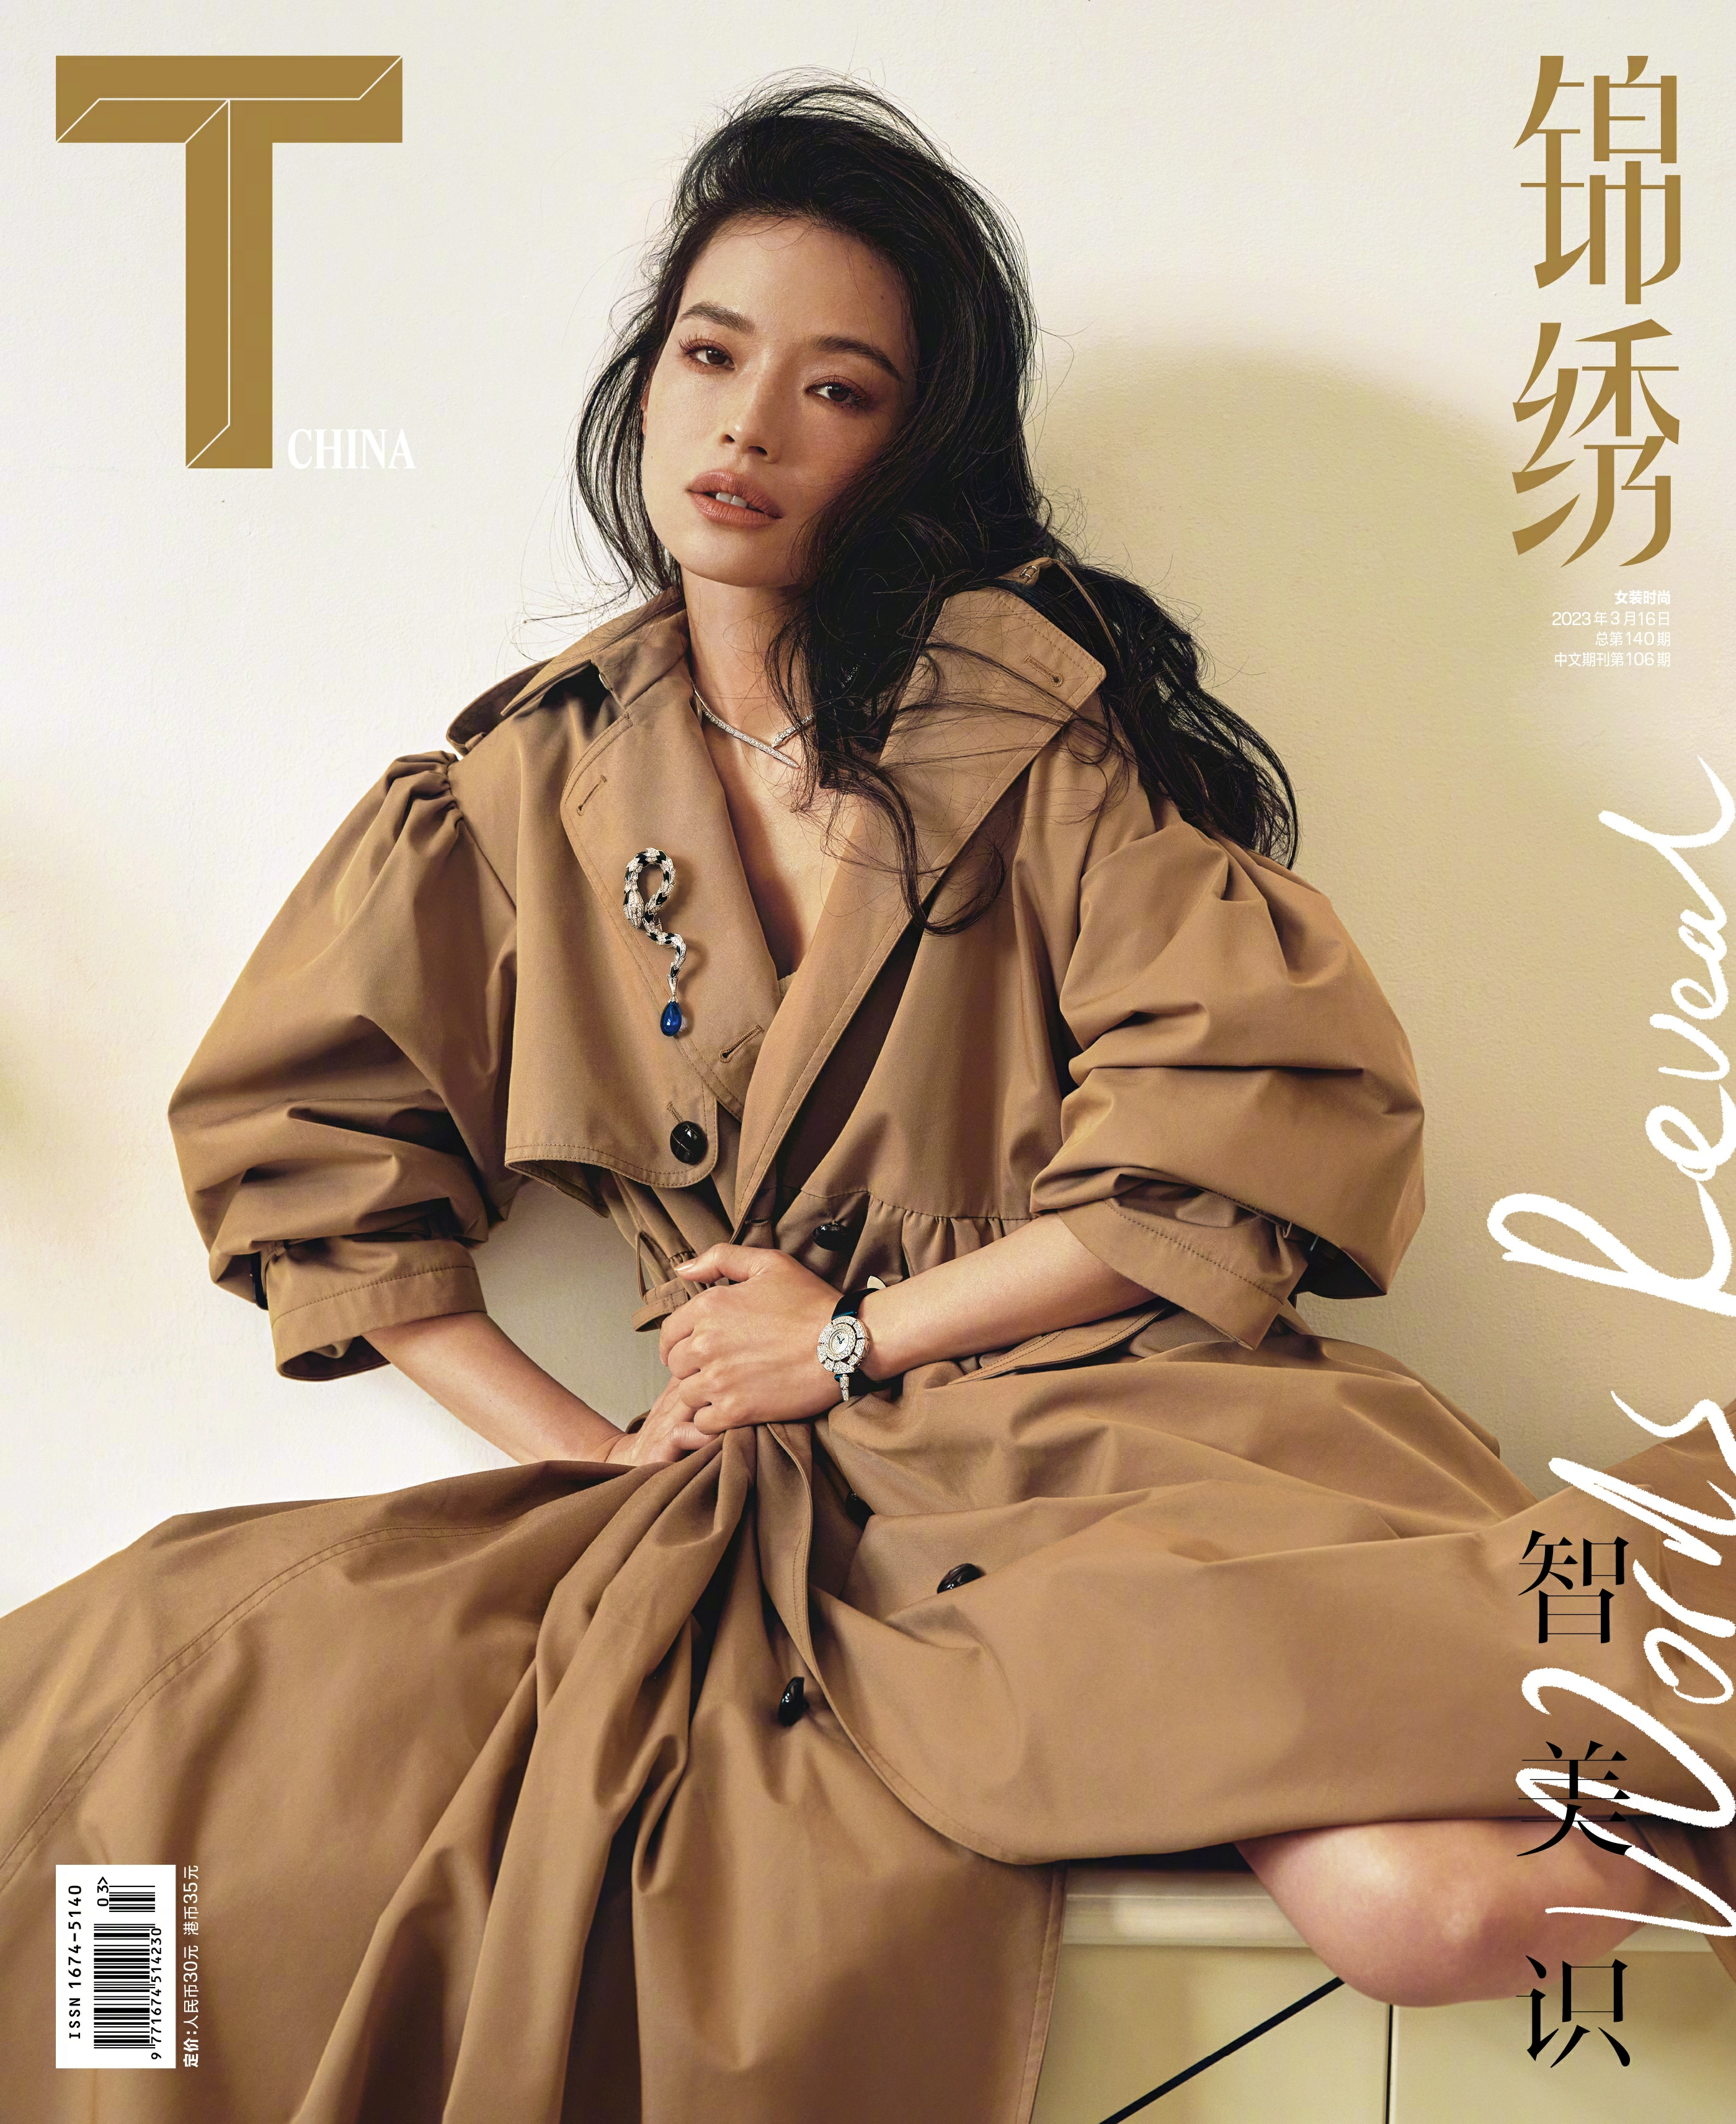 舒淇登上《T Magazine China 锦绣》3月刊封面大片 越松弛的女人越美丽,1 (1)